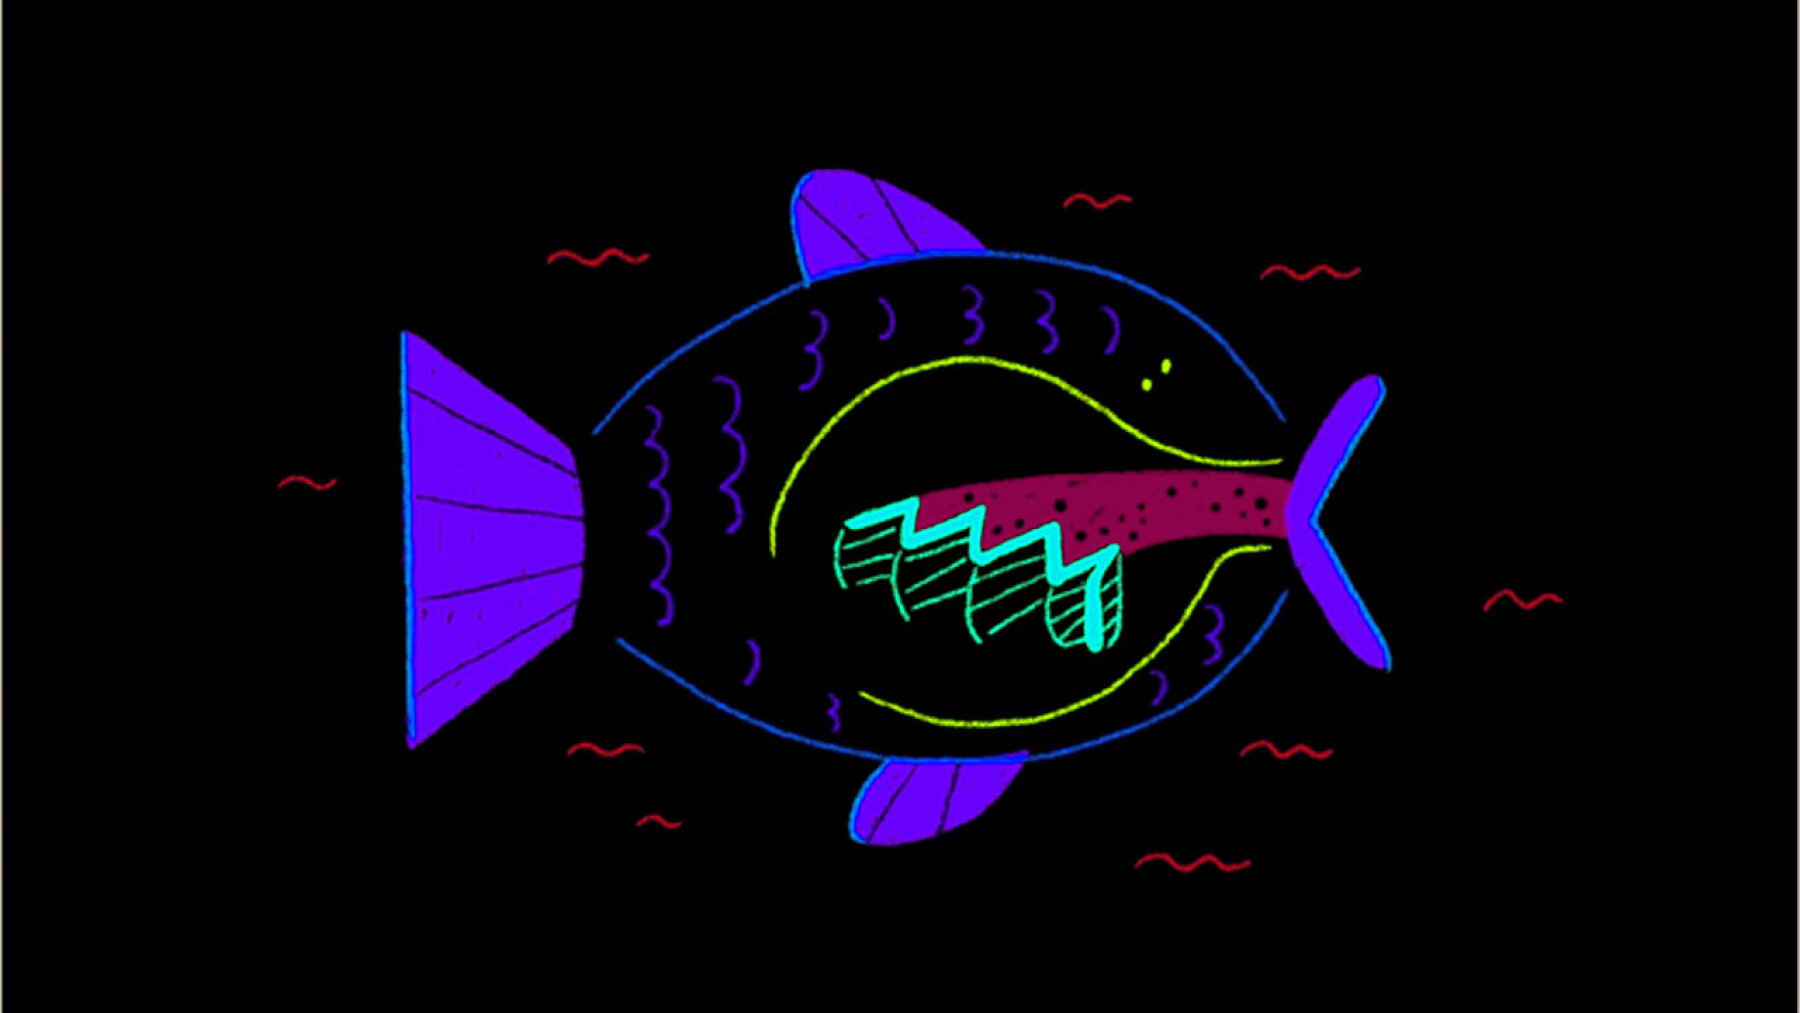 Comment les poissons respirent sous l'eau ?